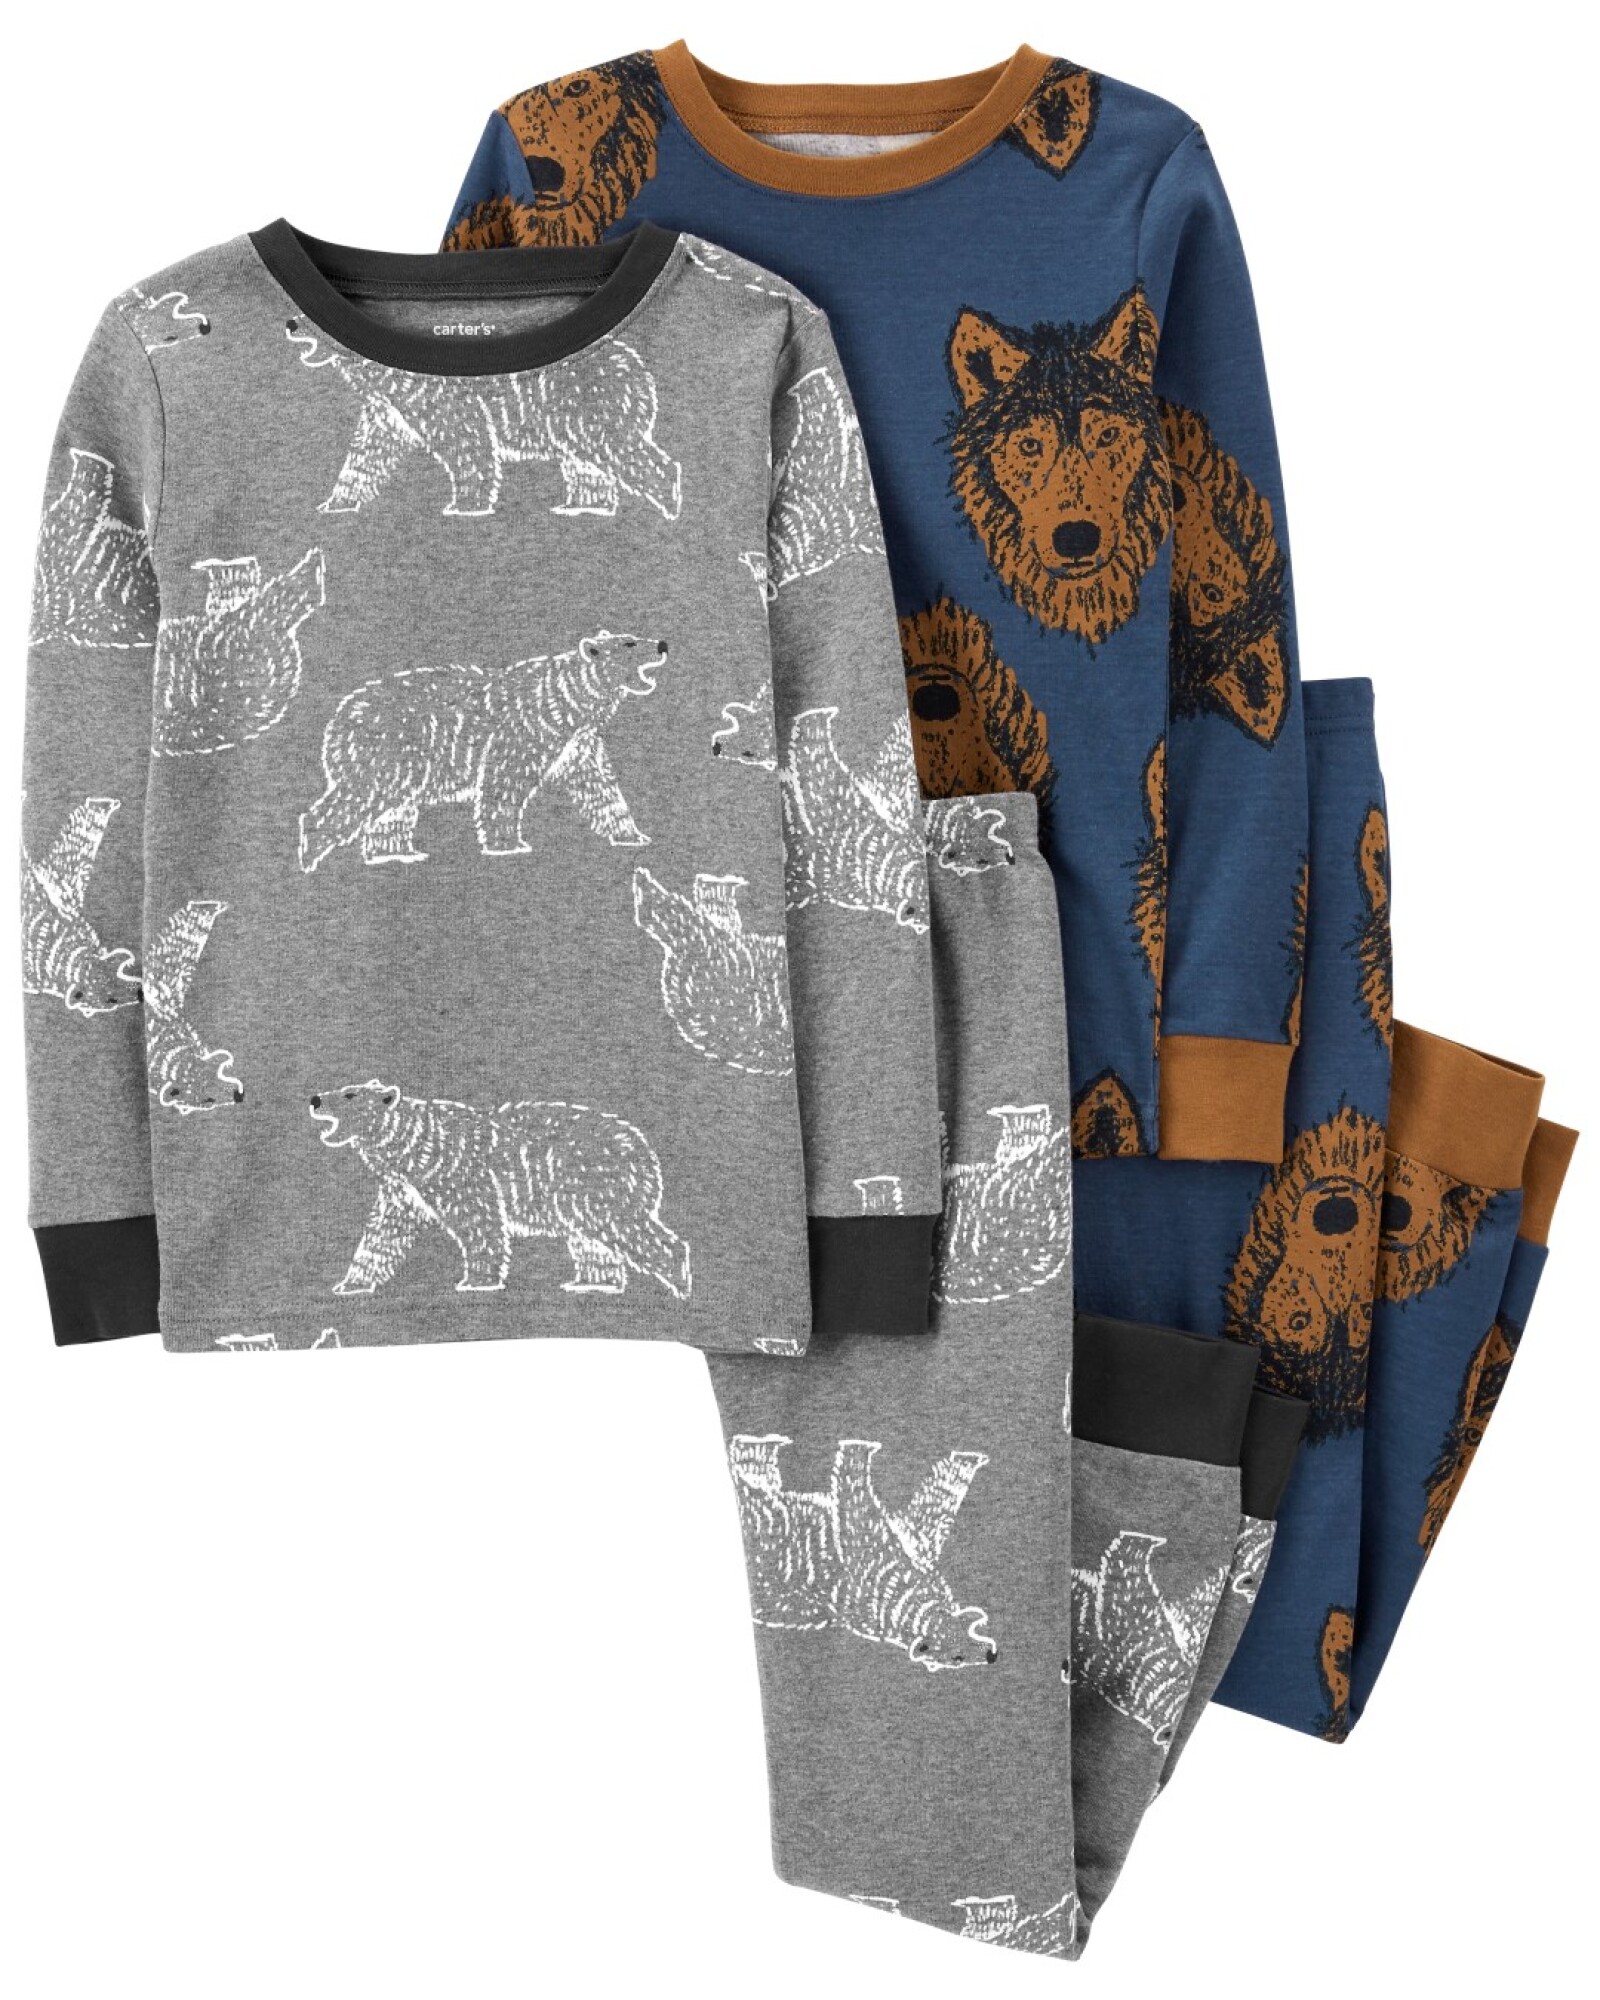 Pijama cuatro piezas de algodón diseño lobos Sin color